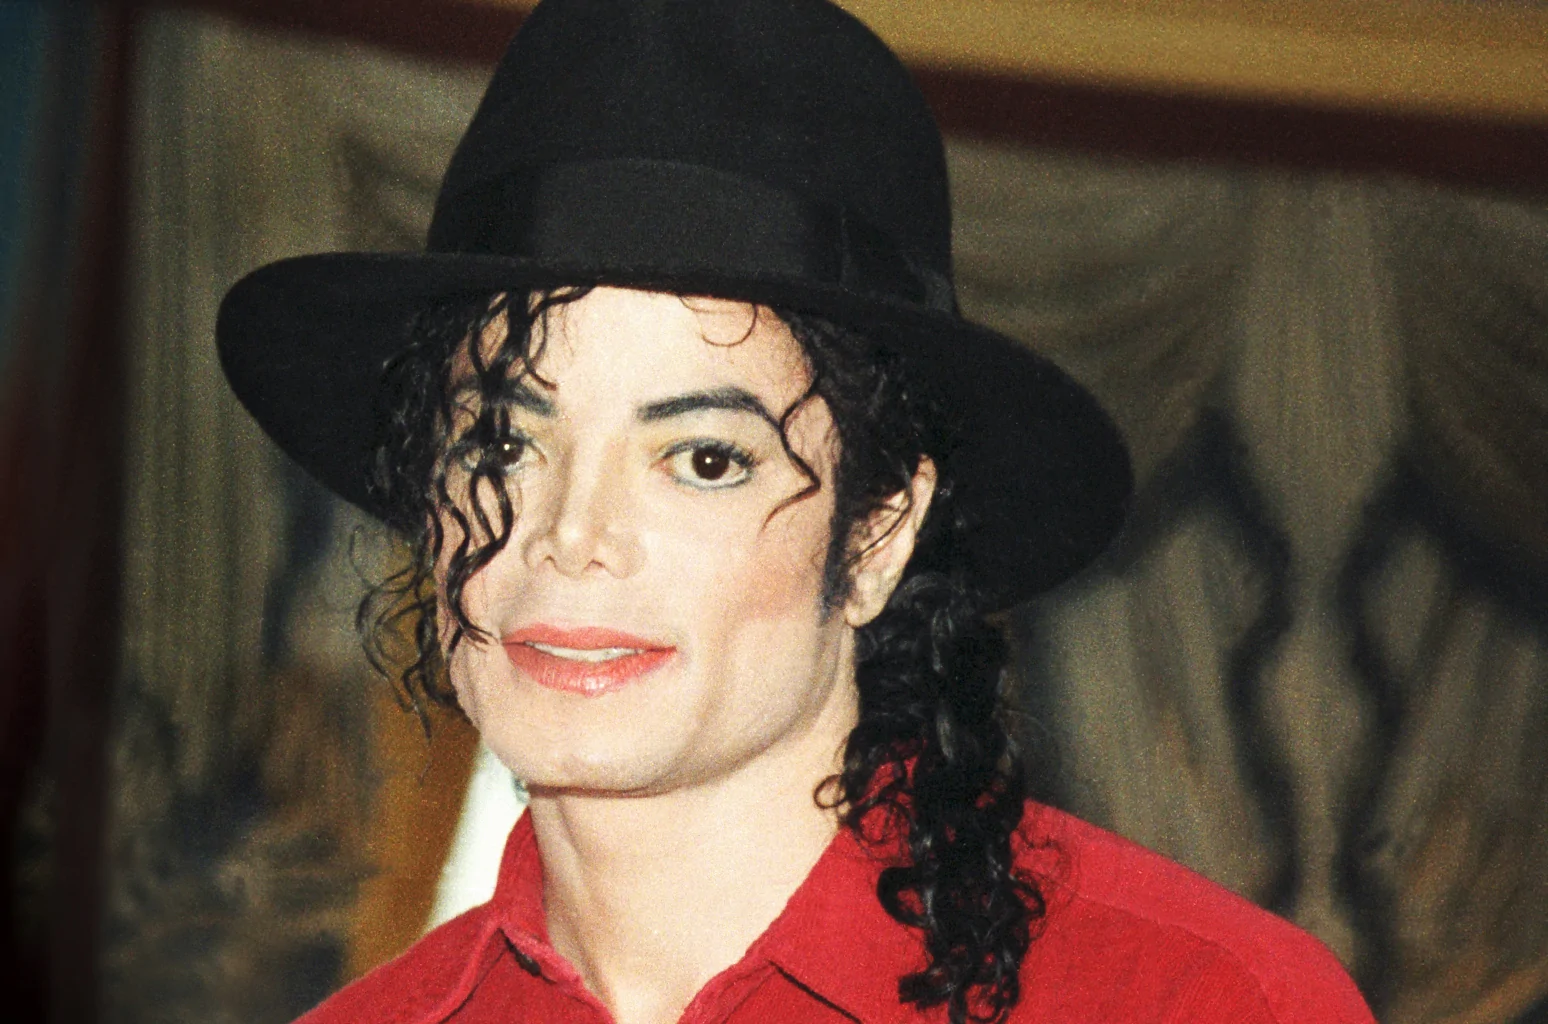 Обвиняющие Майкла Джексона в педофилии настаивают на скорейшем суде